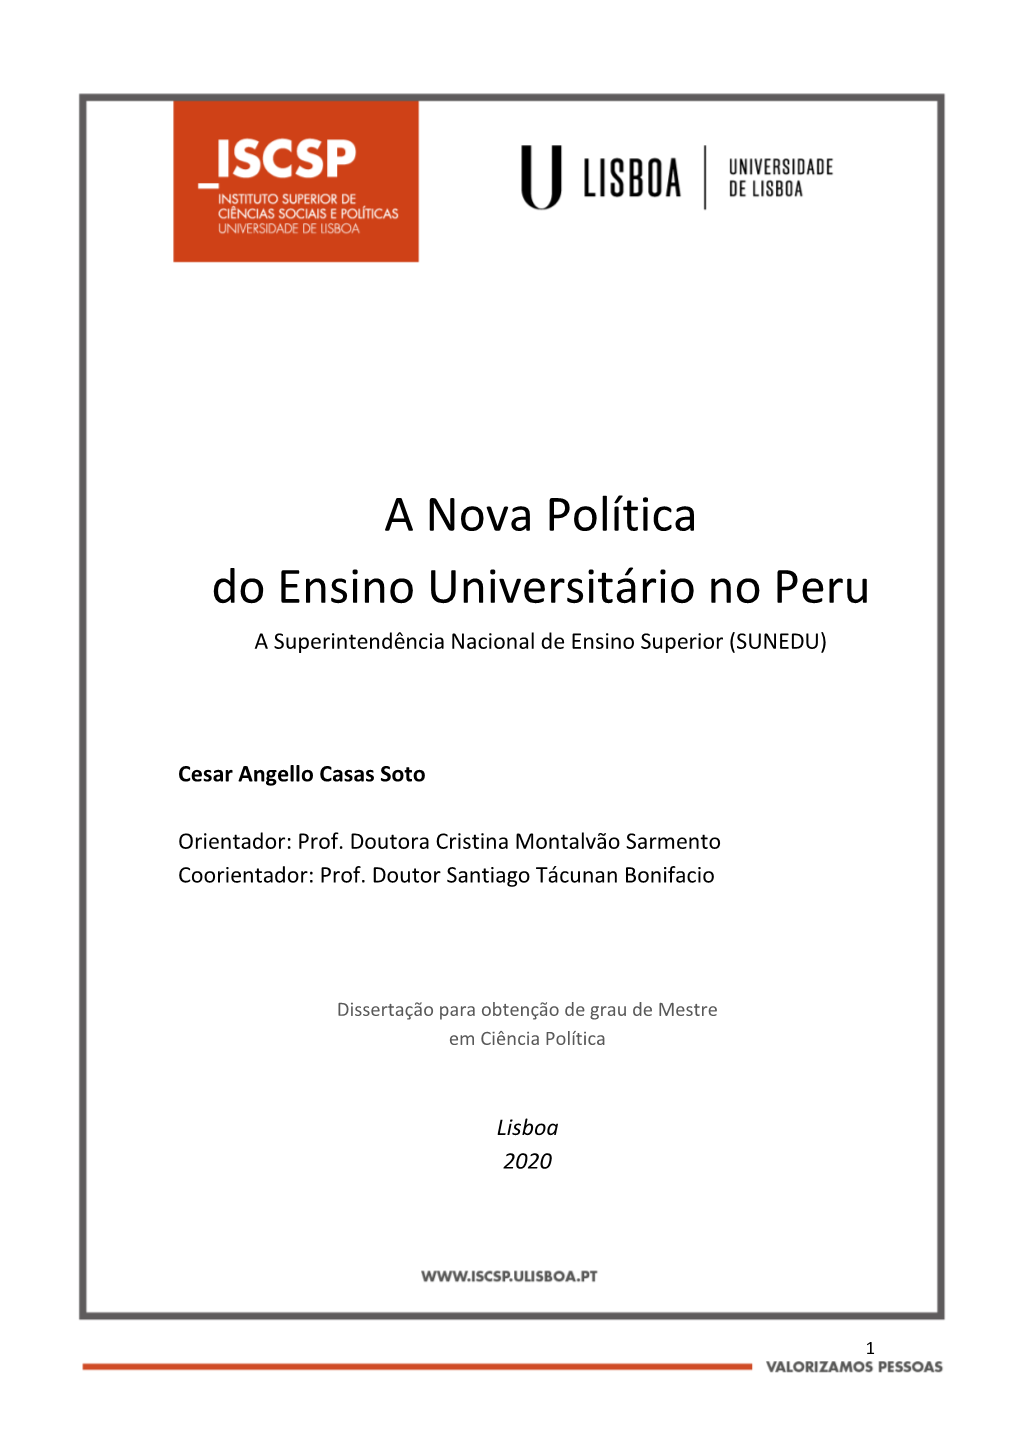 A Nova Política Do Ensino Universitário No Peru